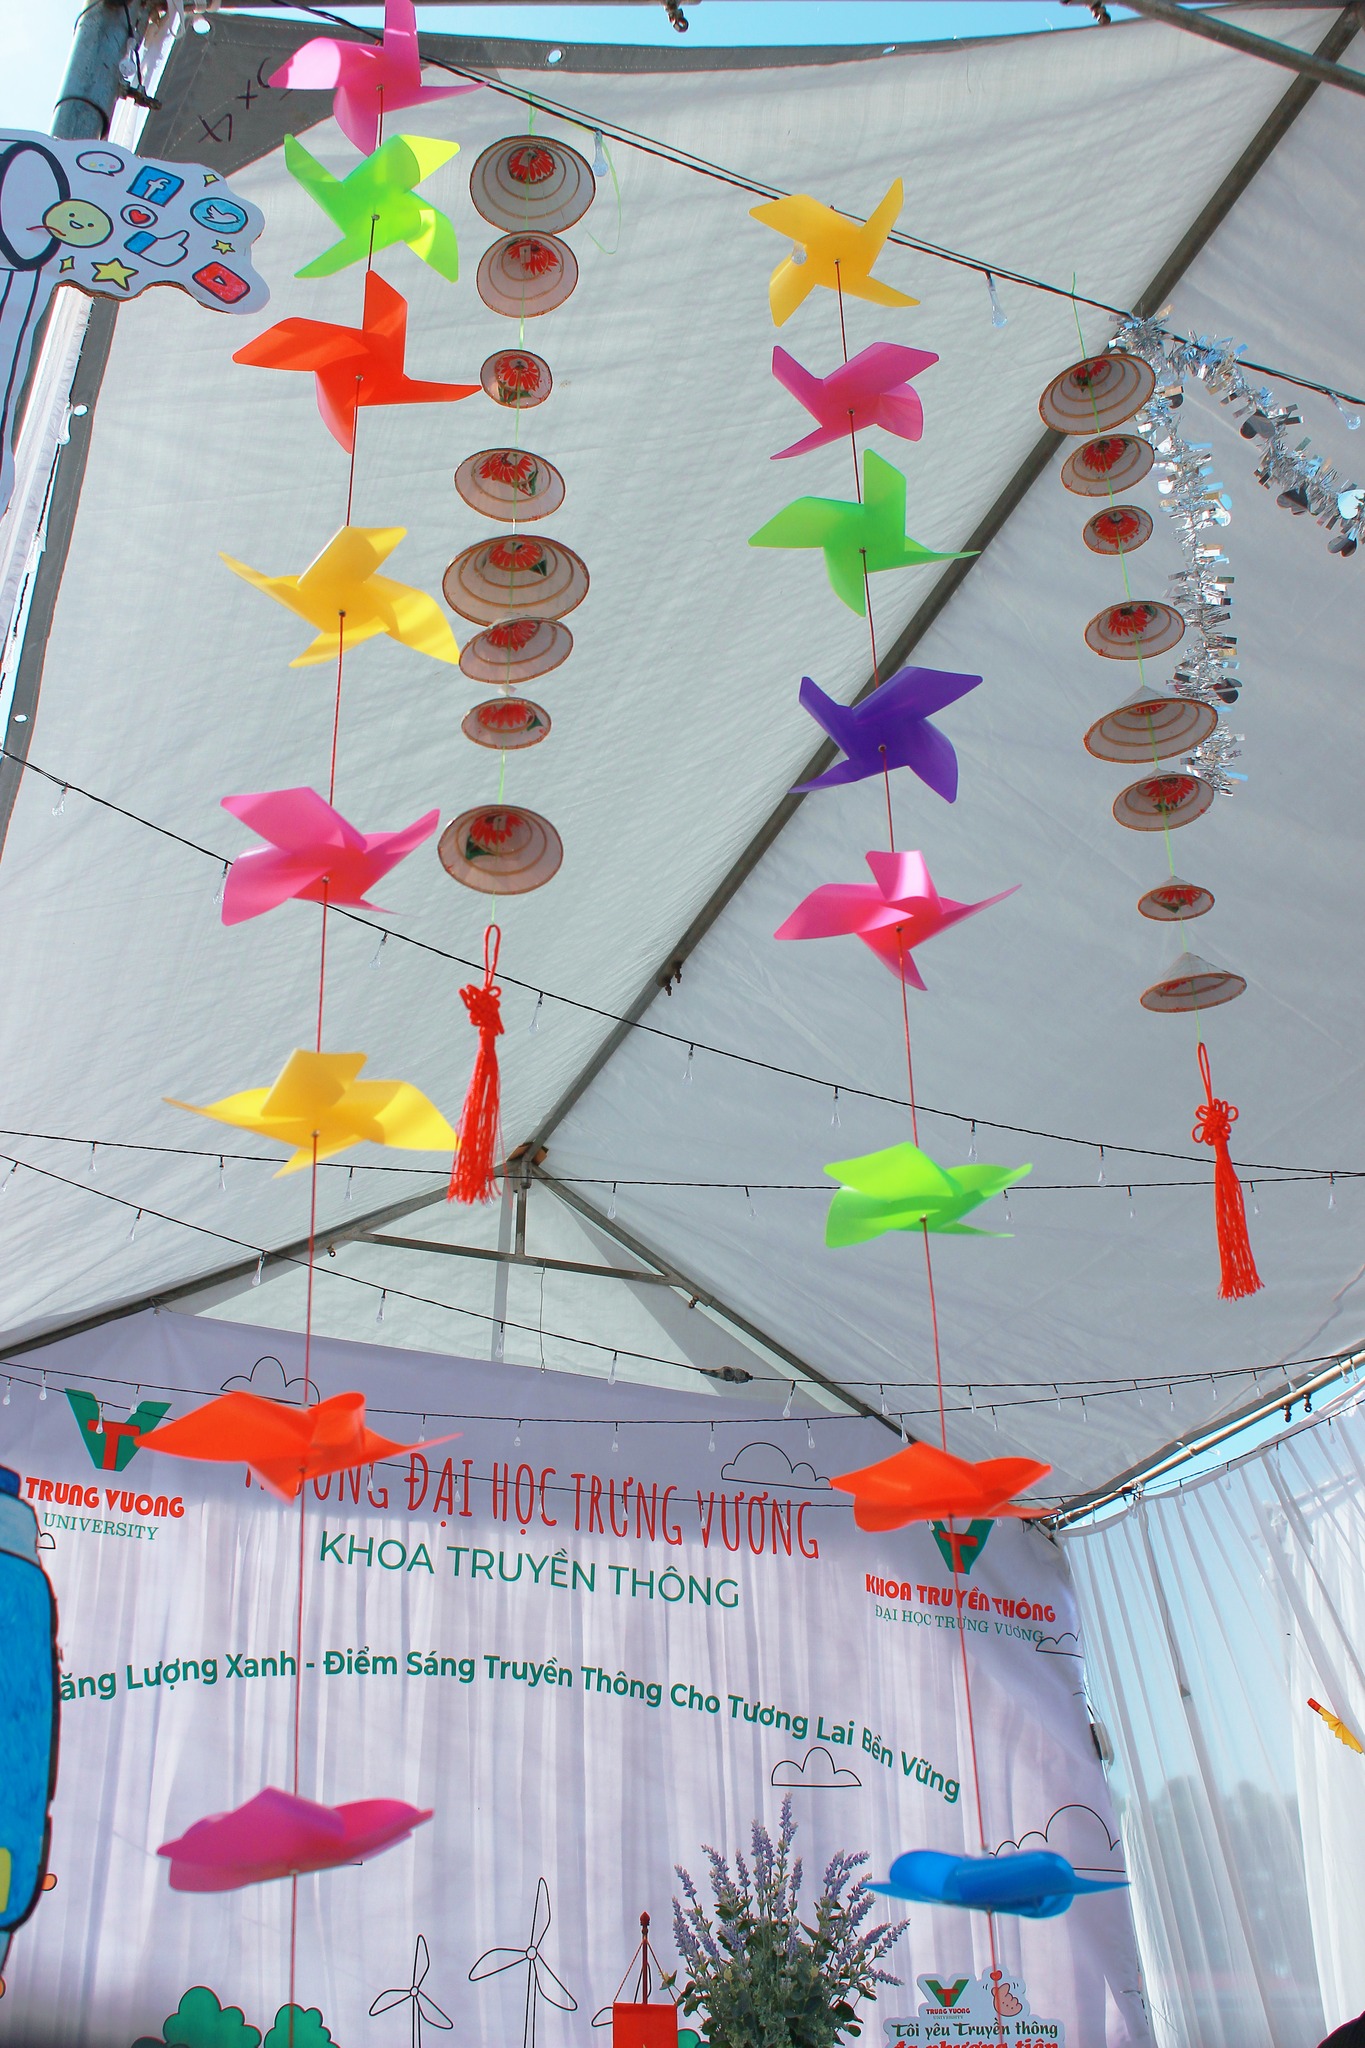 Sinh viên Truyền thông tạo nhiều dấu ấn trong cuộc thi thiết kế trại do trường Đại học Trưng Vương tổ chức cùng chuỗi hoạt động kỷ niệm Ngày nhà giáo Việt Nam 20/11_8